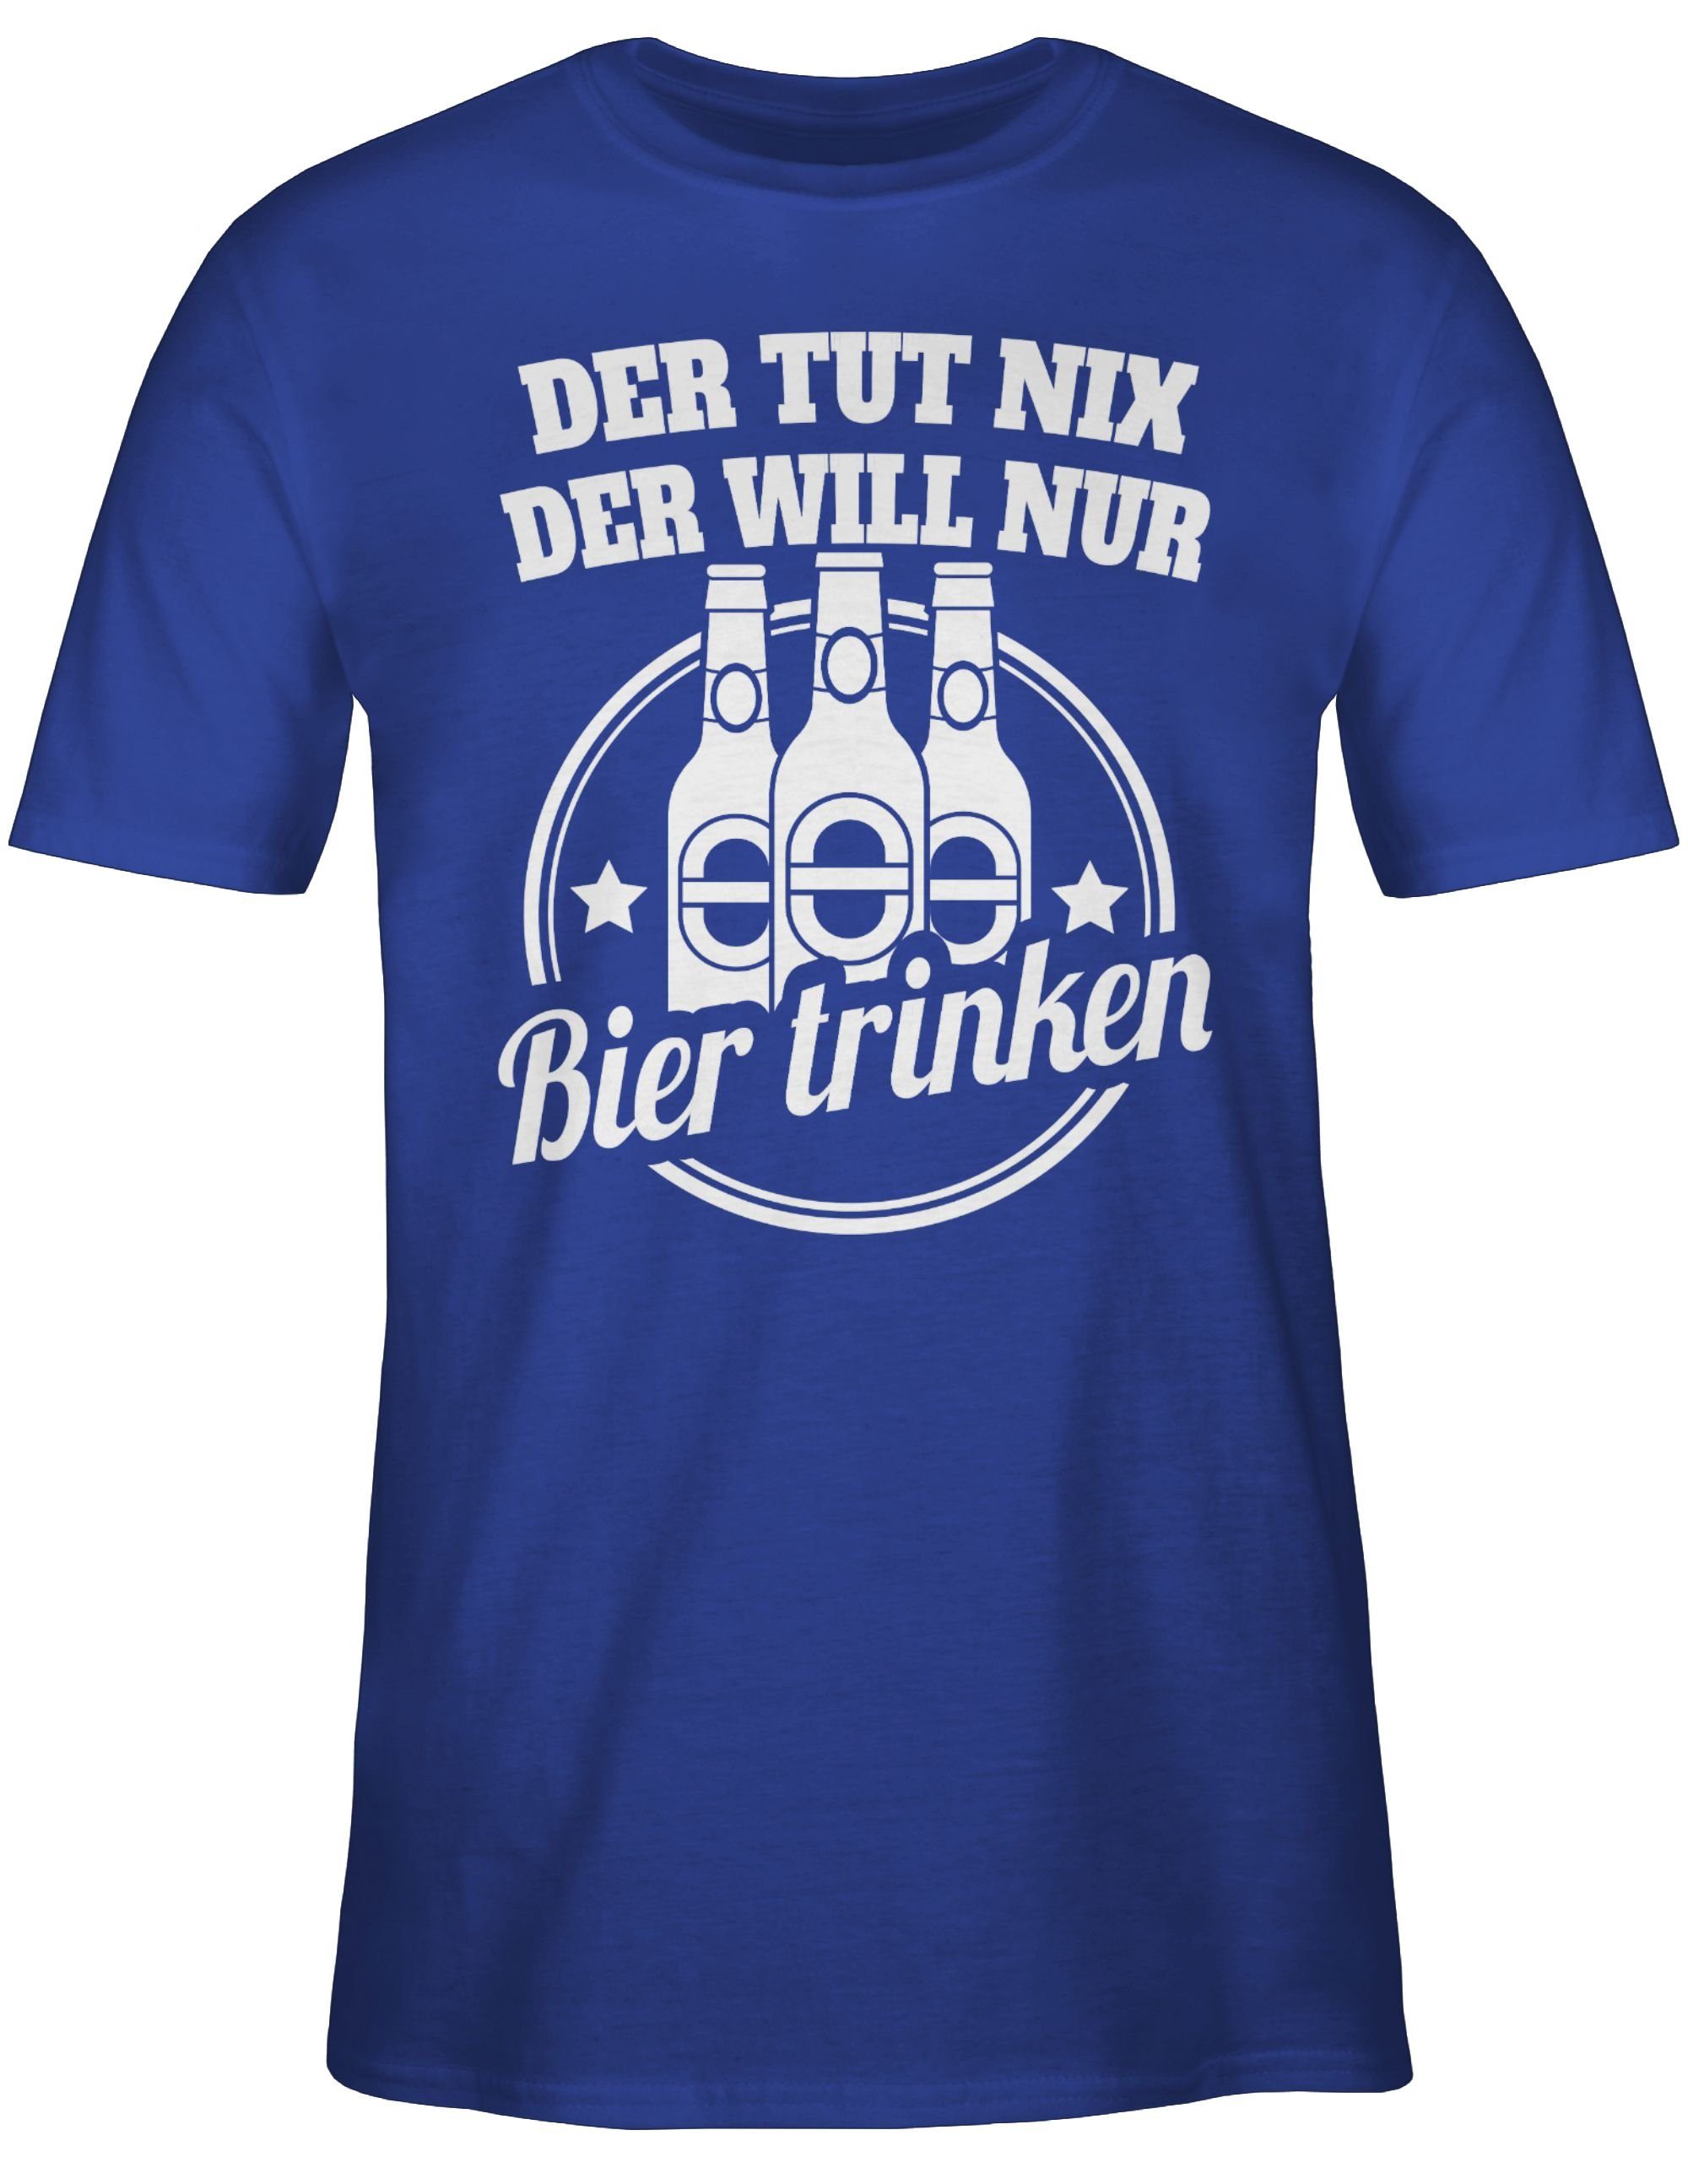 Sprüche tut der Shirtracer nur Spruch 3 mit T-Shirt will Der Bier Statement Royalblau nix trinken